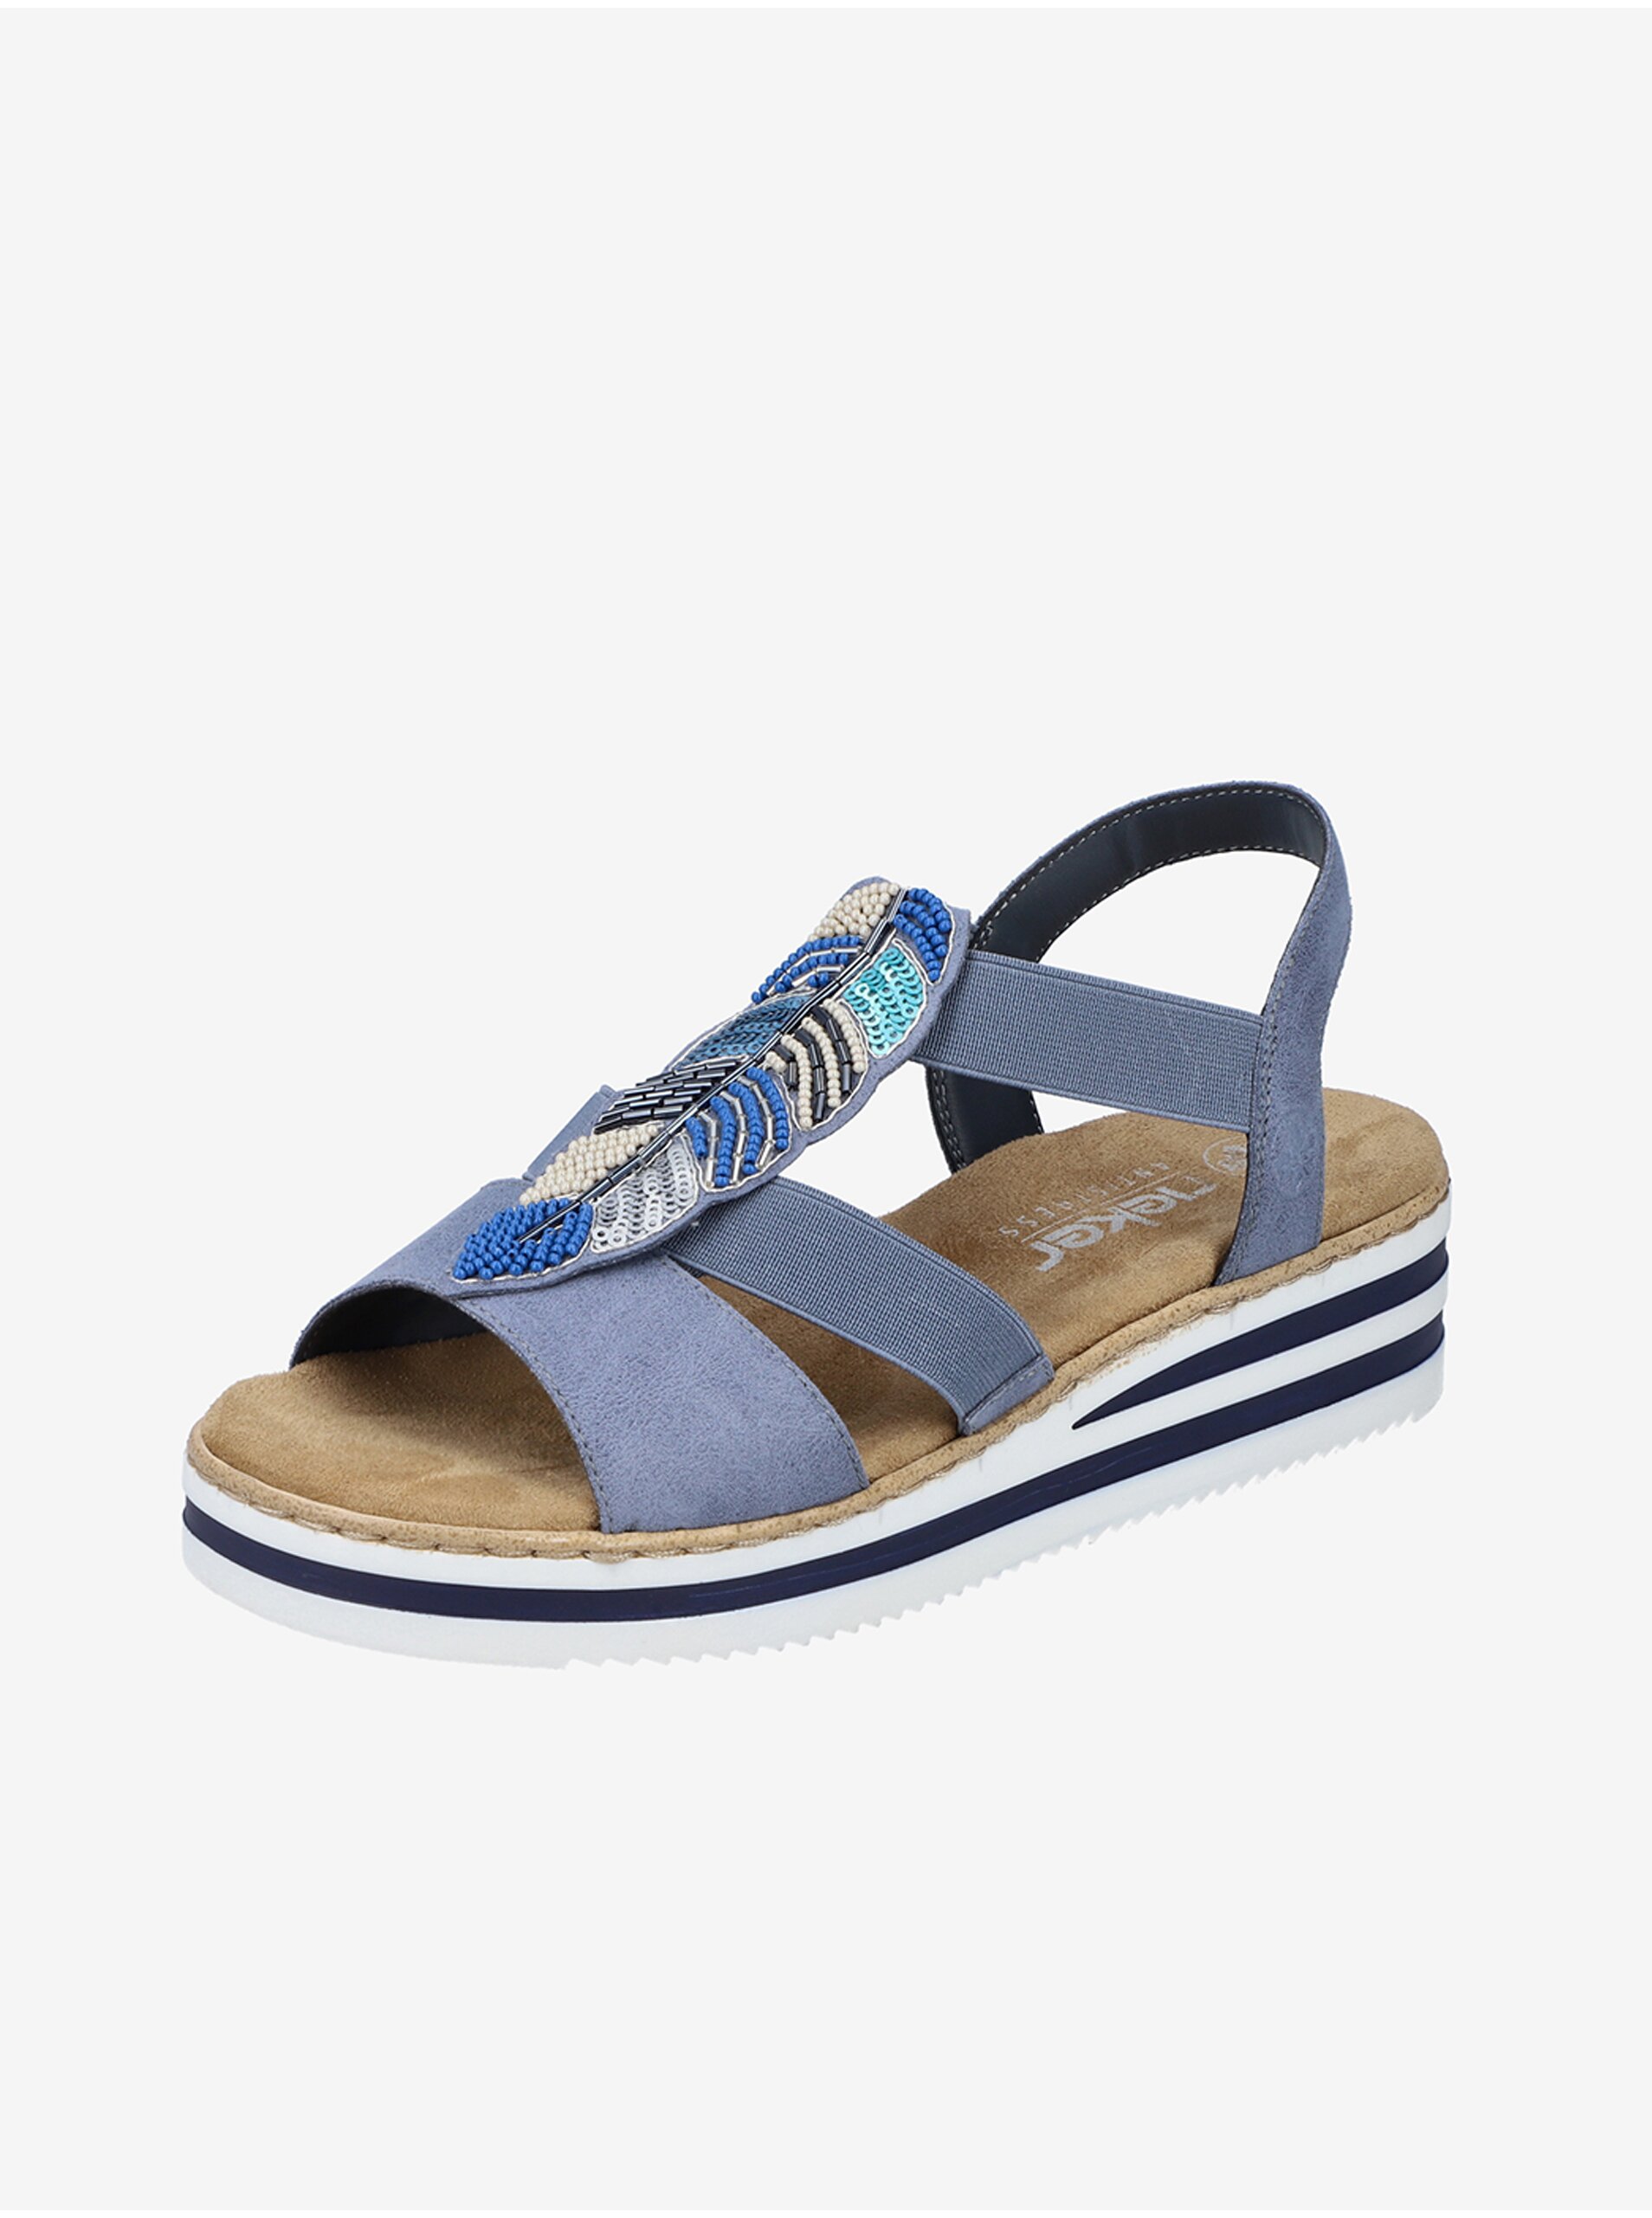 E-shop Modré dámske sandálky Rieker